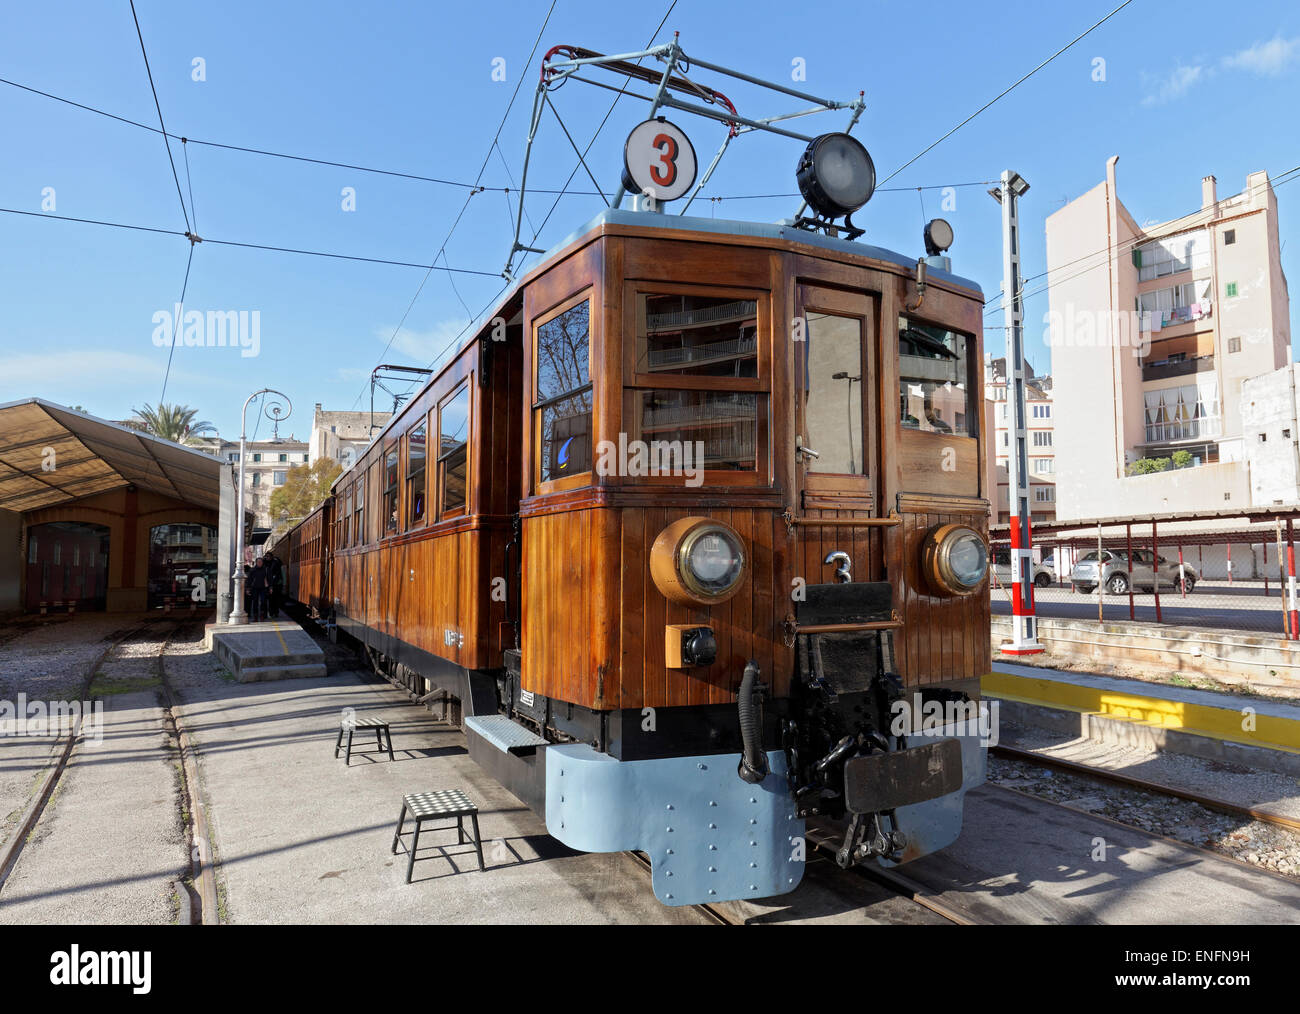 Triebwagen mit Holzvertäfelung, historische Eisenbahn Palma-Soller, Ferrocarril de Sóller, Tren de Sóller, Palma de Mallorca, Mallorca Stockfoto